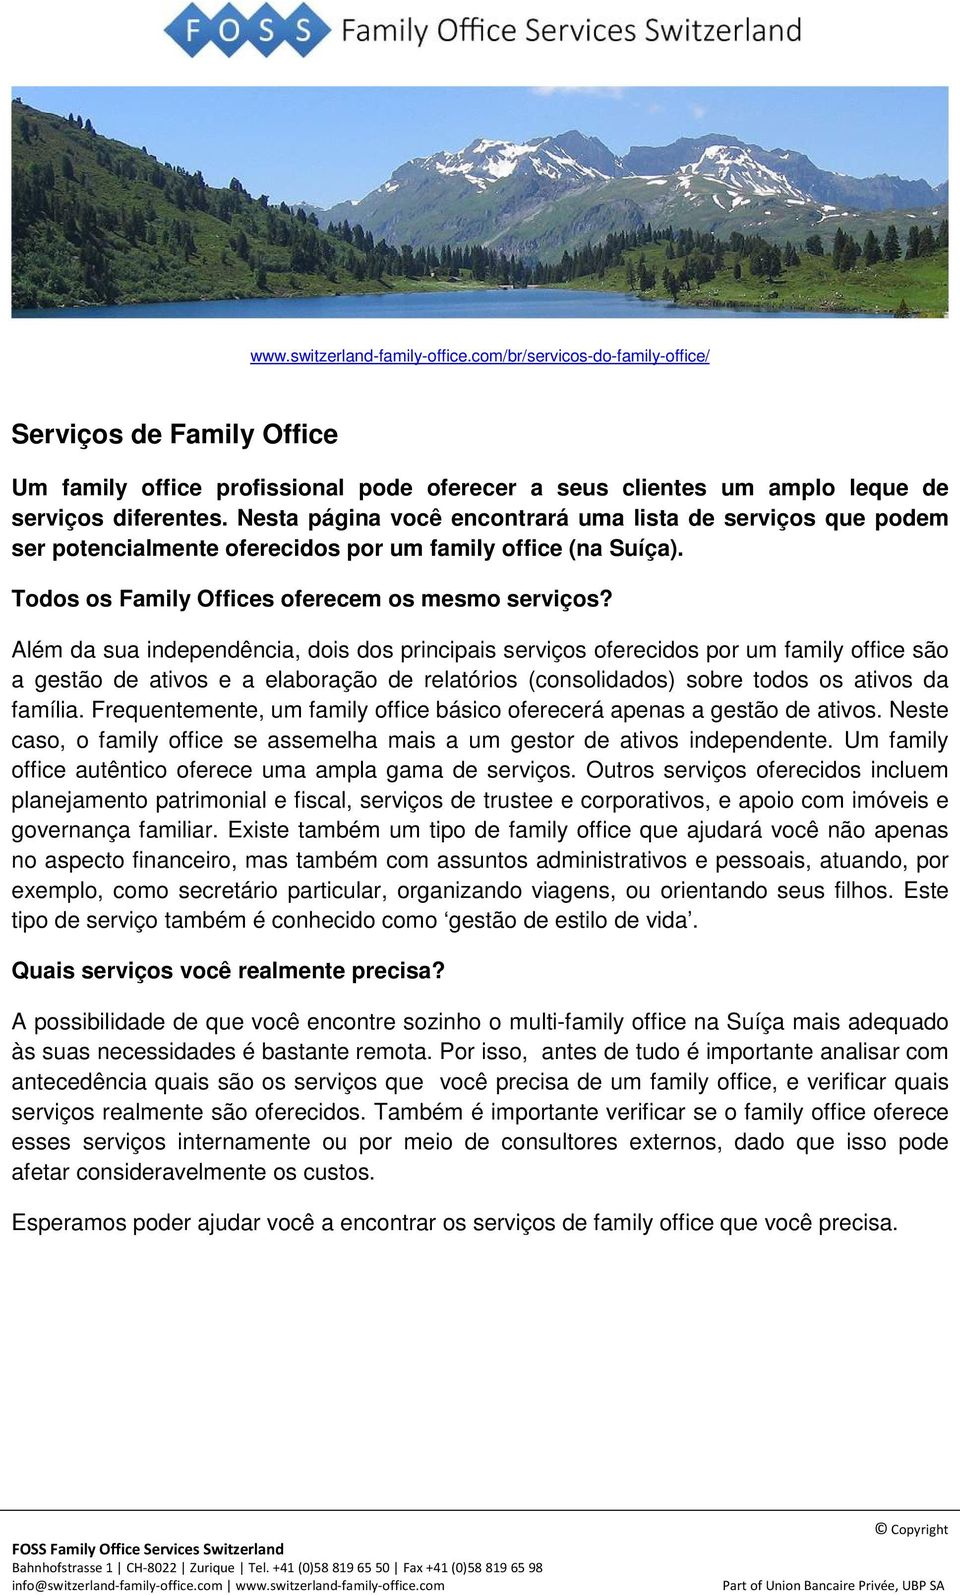 Além da sua independência, dois dos principais serviços oferecidos por um family office são a gestão de ativos e a elaboração de relatórios (consolidados) sobre todos os ativos da família.